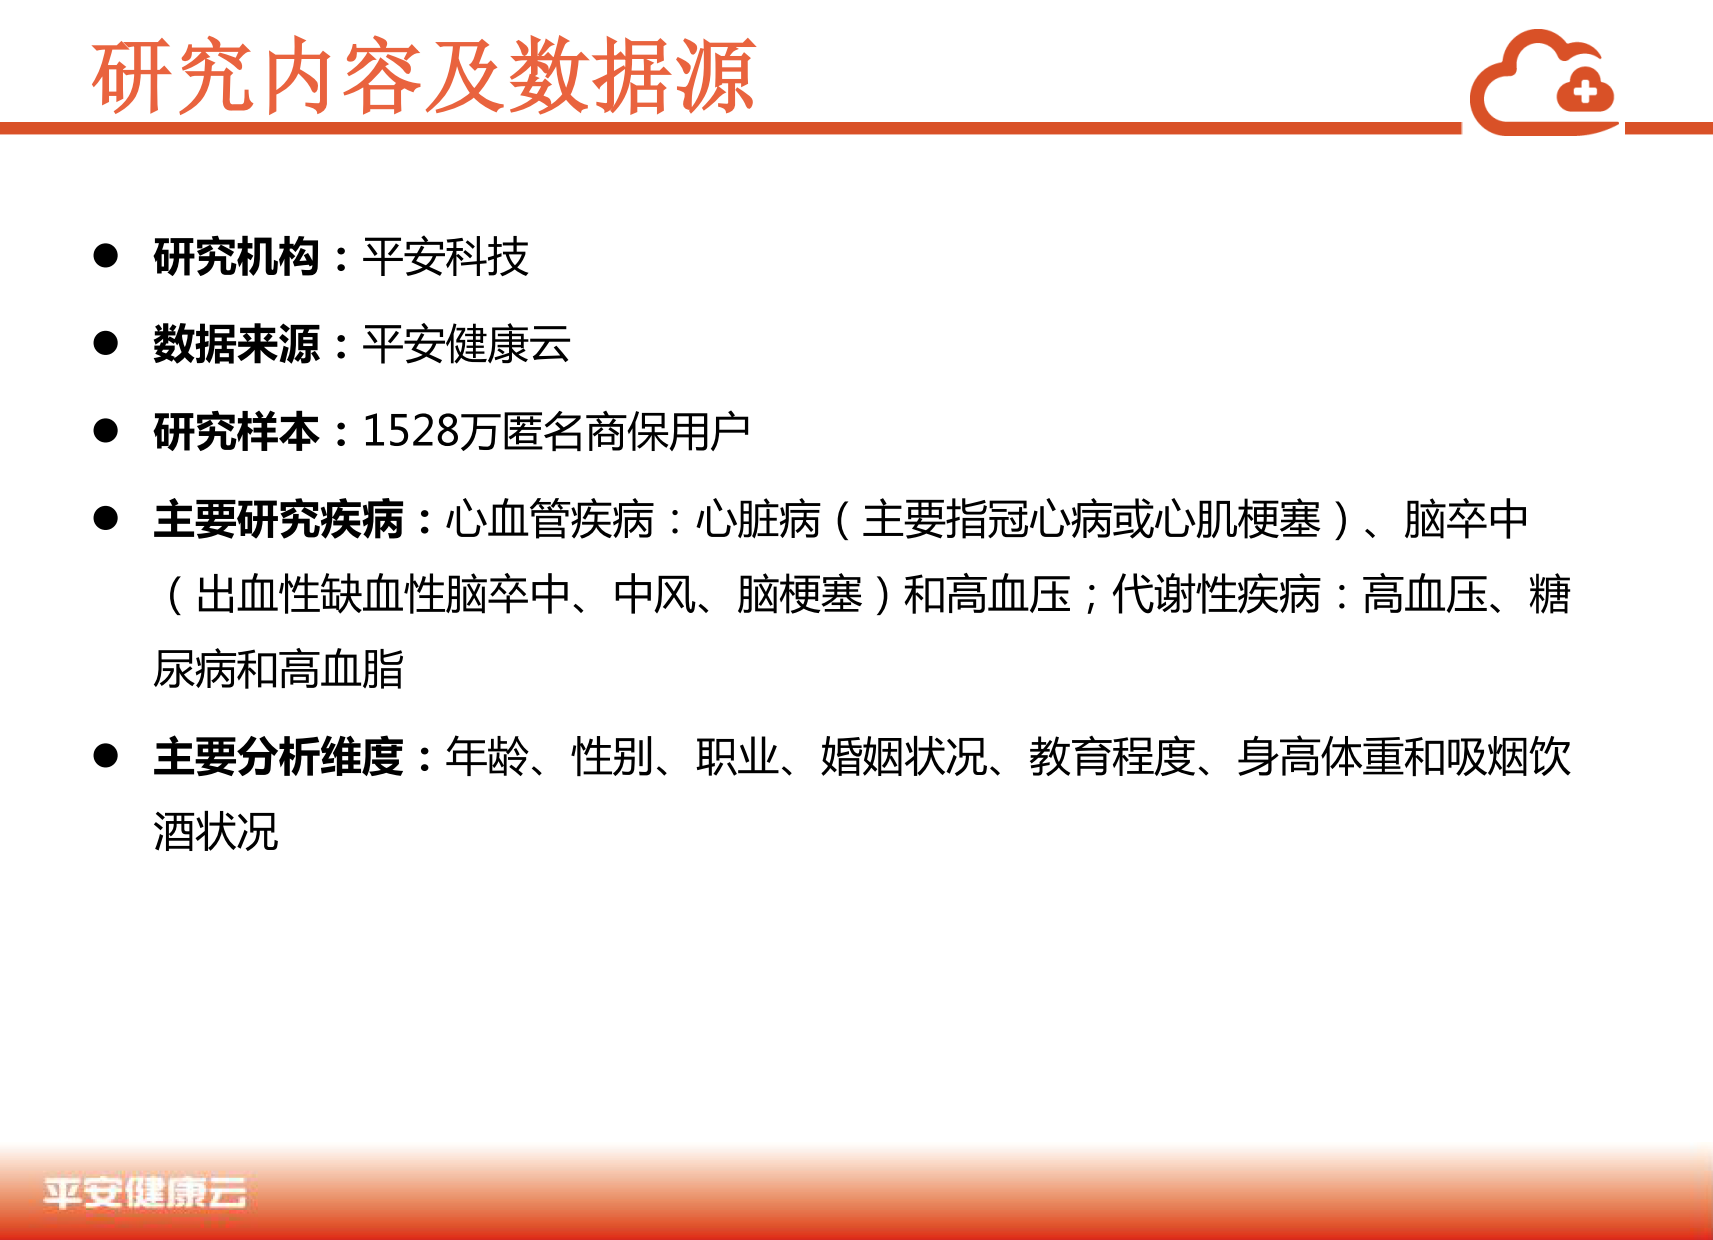 中国商业保险健康大数据白皮书_2_04.png